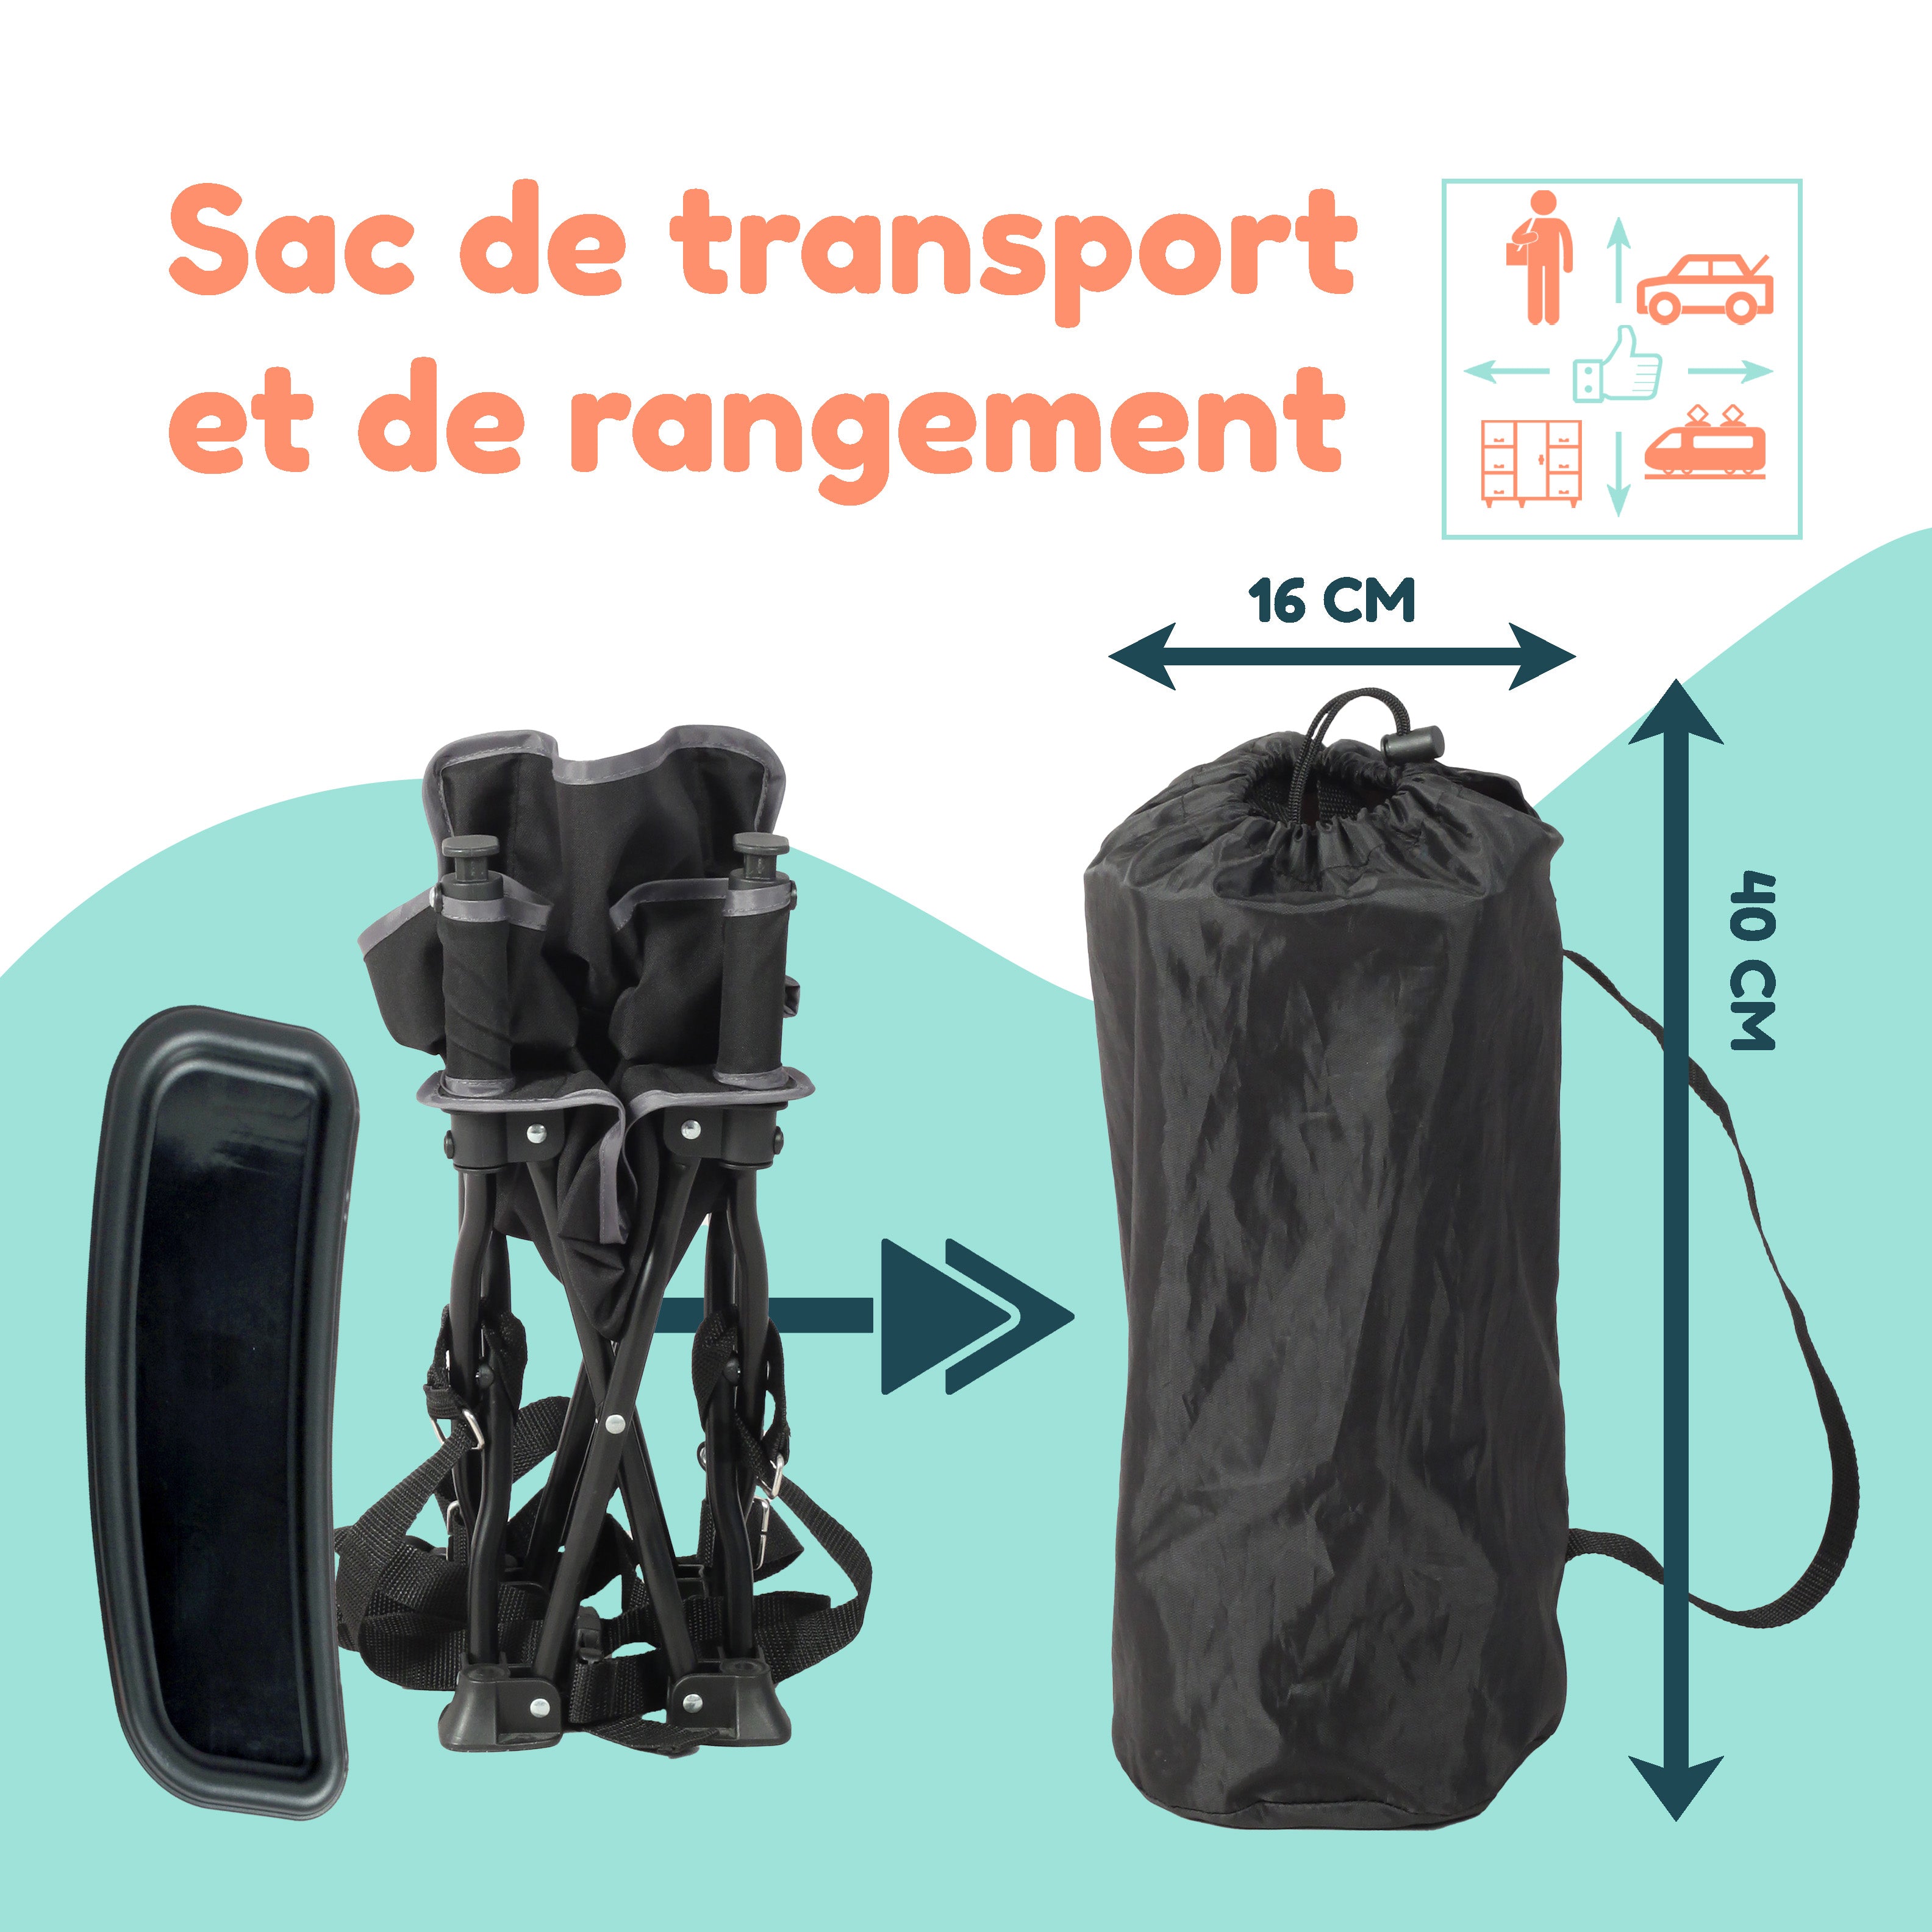 Rehausseur Chaise Enfant 'Chaizounette' - BAMBISOL - Evolutif dès 6 mois -  Sac Transport - Siège Camping Enfant